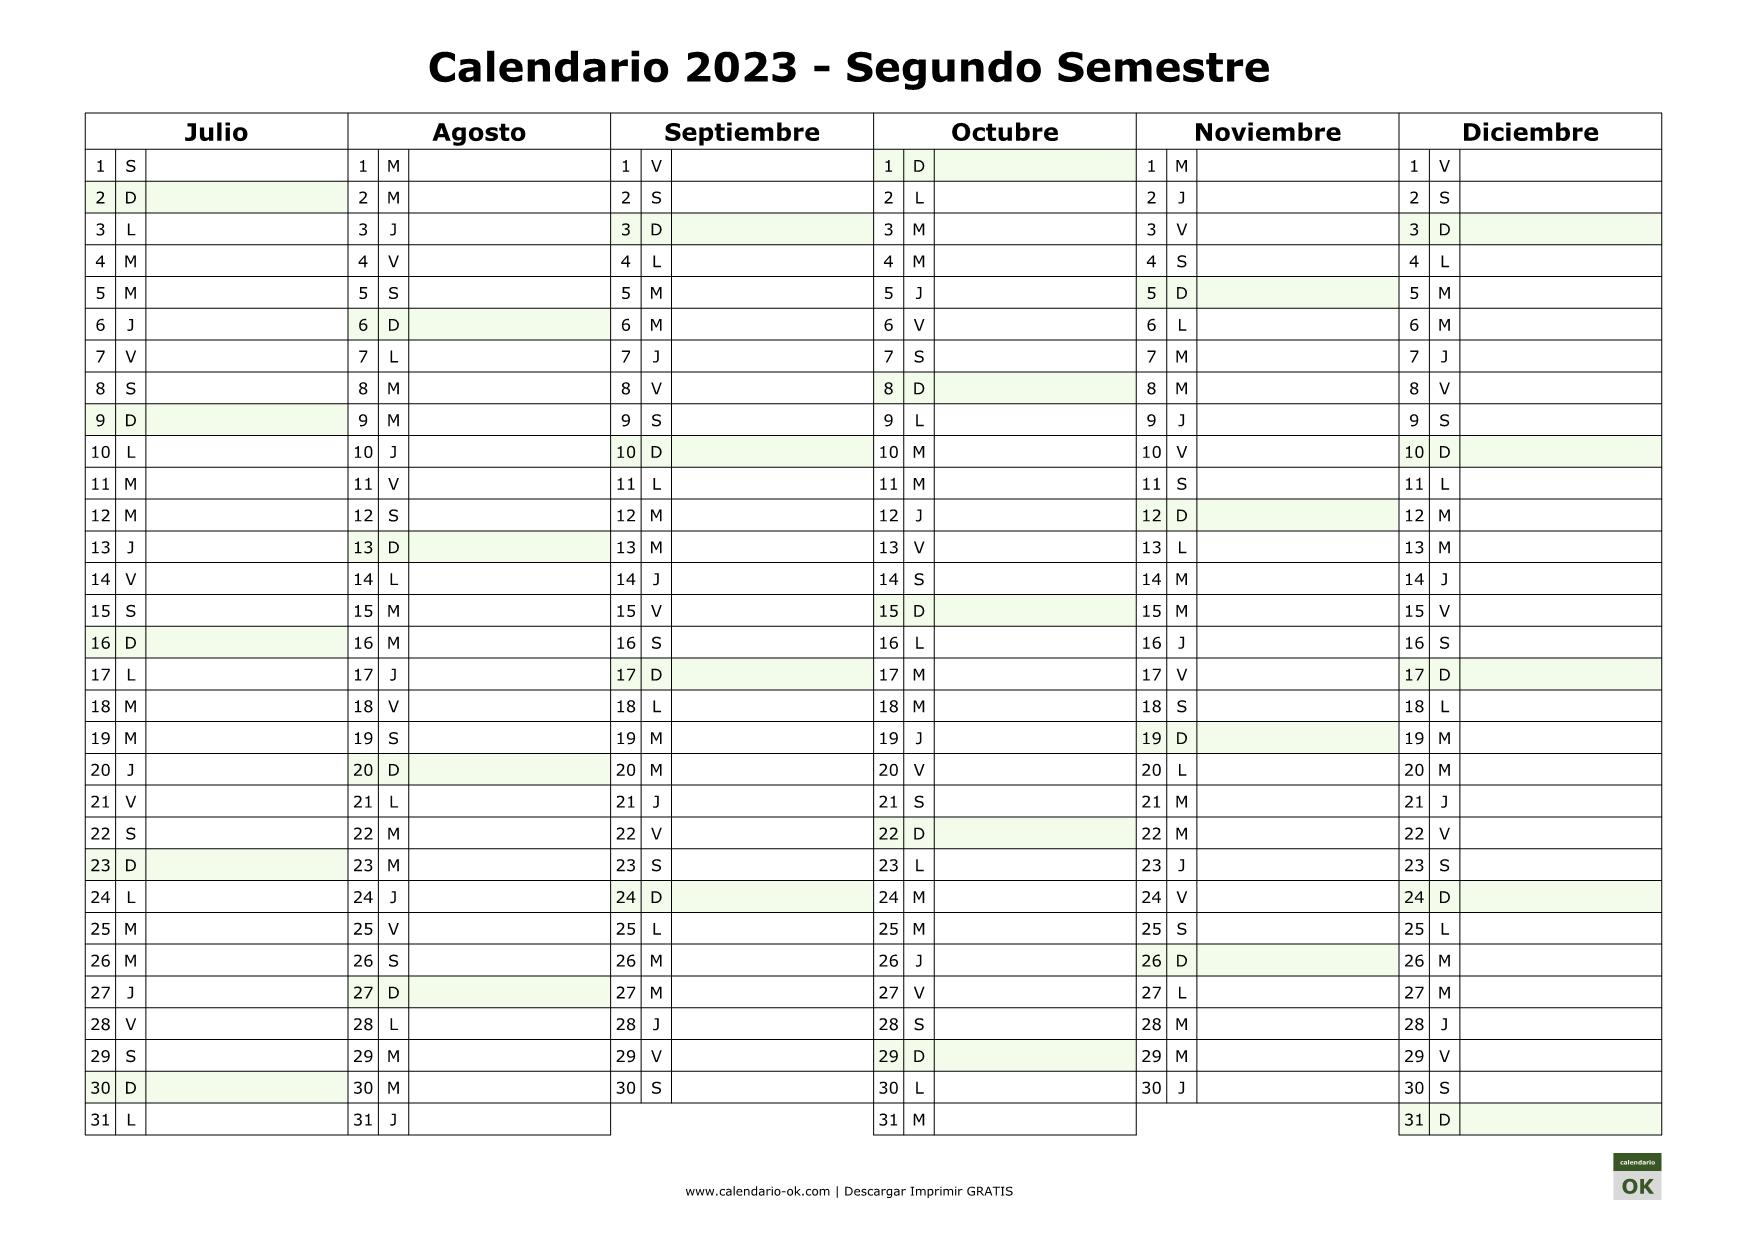 Calendario 2023 En Word ▷ Plantillas de CALENDARIOS 2020 en PDF JPG WORD